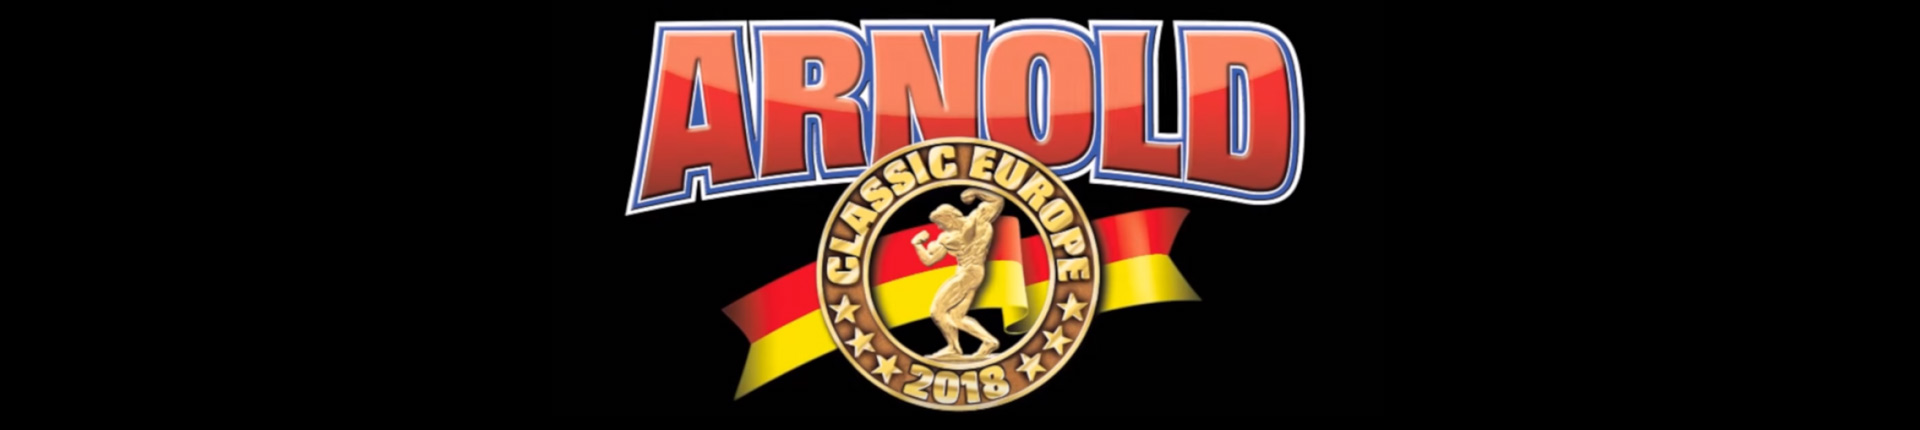 Arnold Classic Europe 2018. Dzień drugi, nie tak dobry jak pierwszy